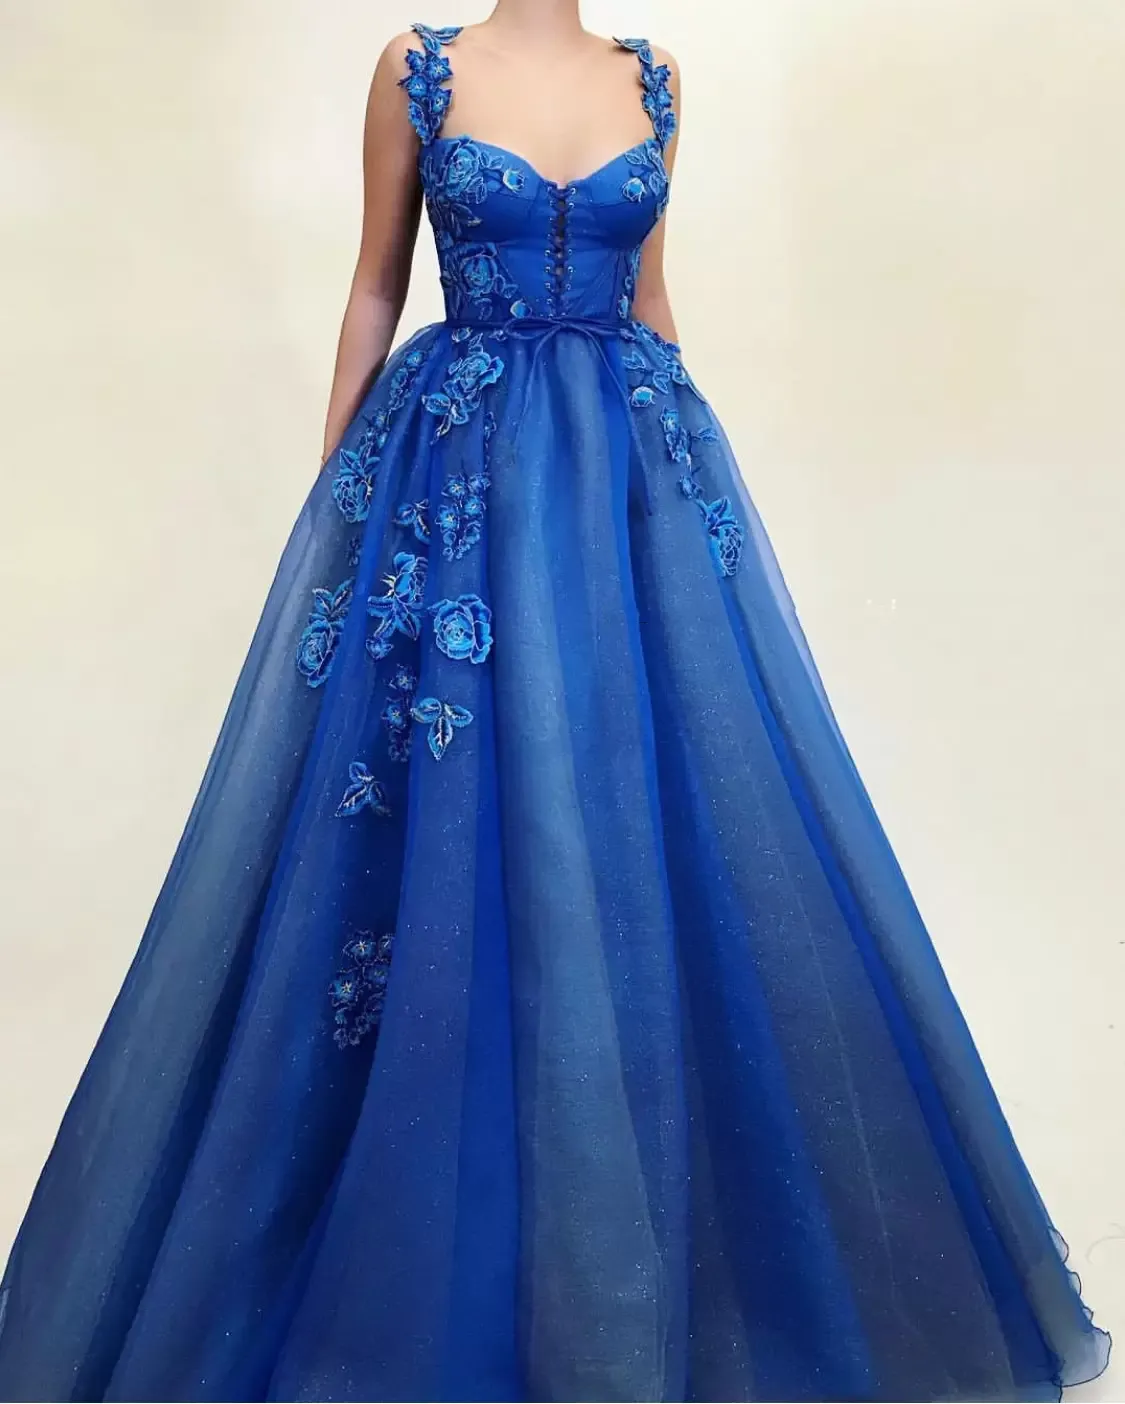 Сексуальные элегантные королевские синие платья выпускной выпускной